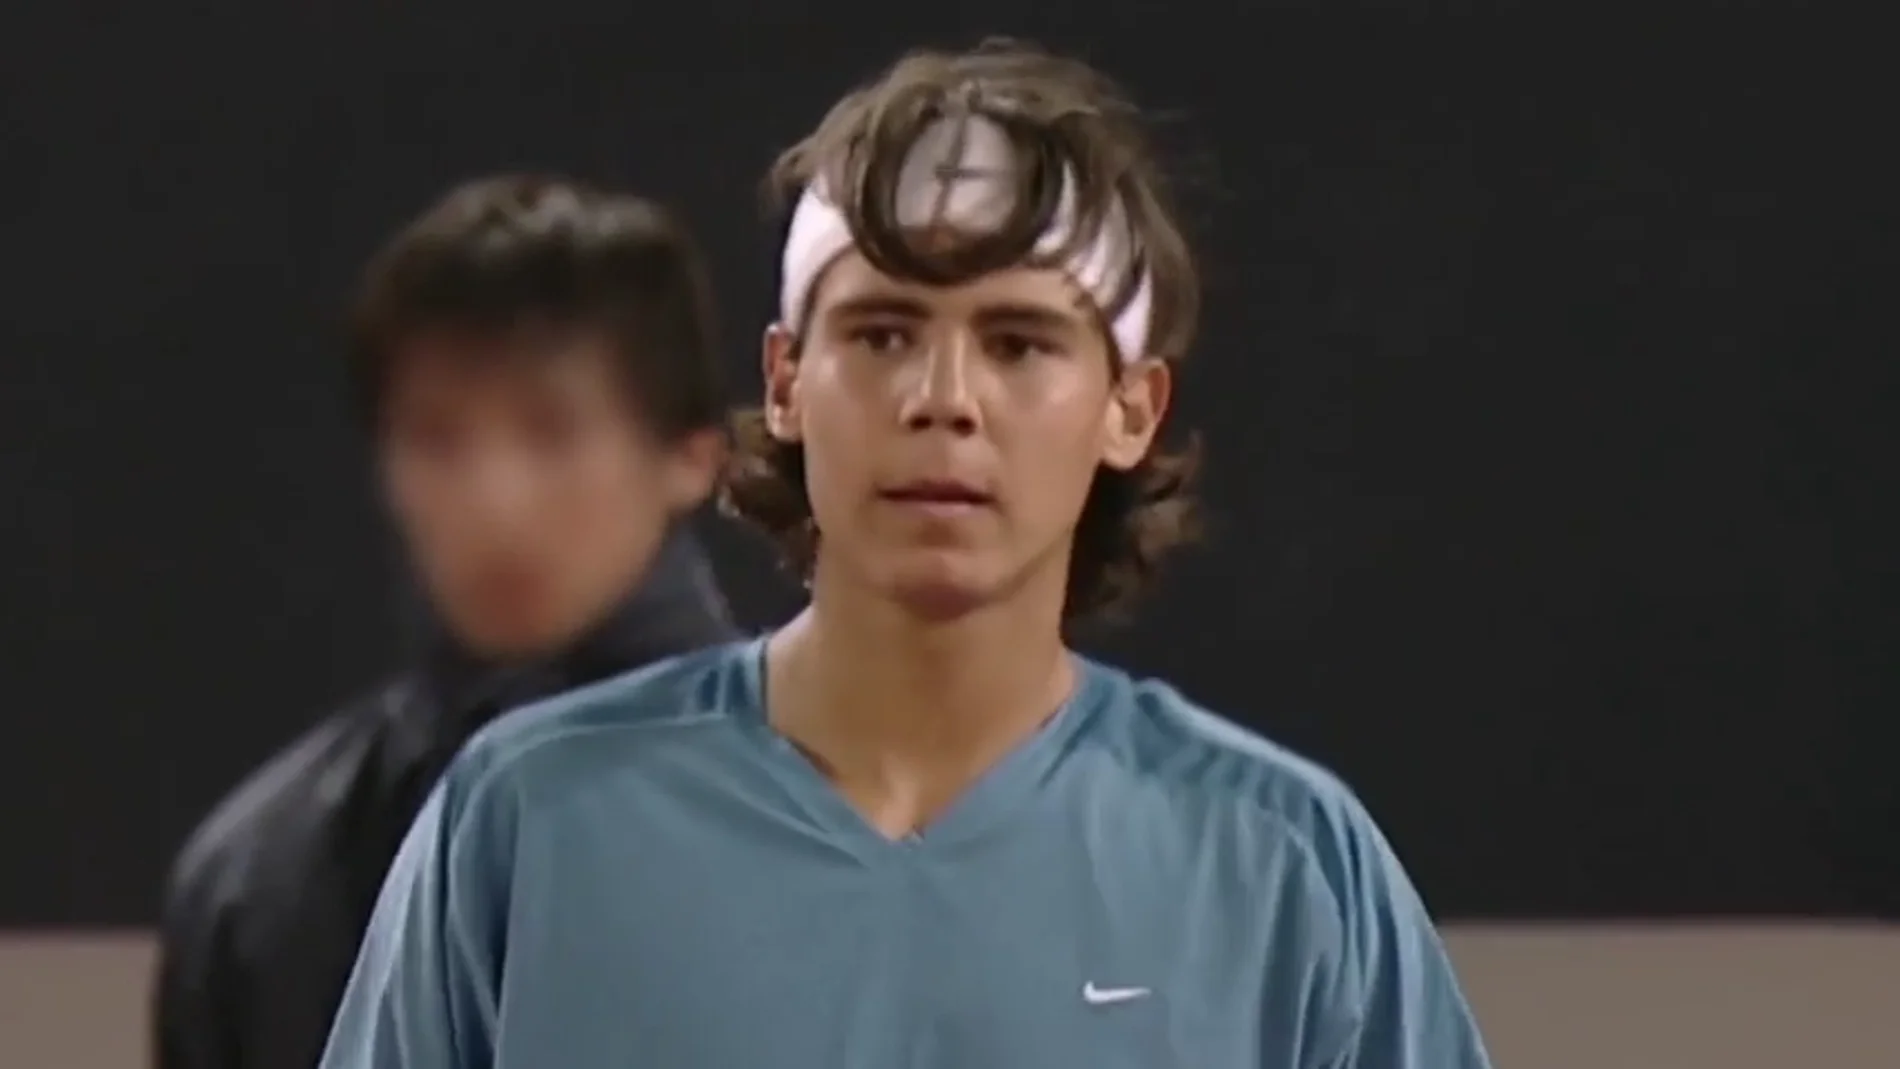 El genial spot de Nadal tras ganar Roland Garros: "Ahí está el fenómeno de 16 años, Rafa..."